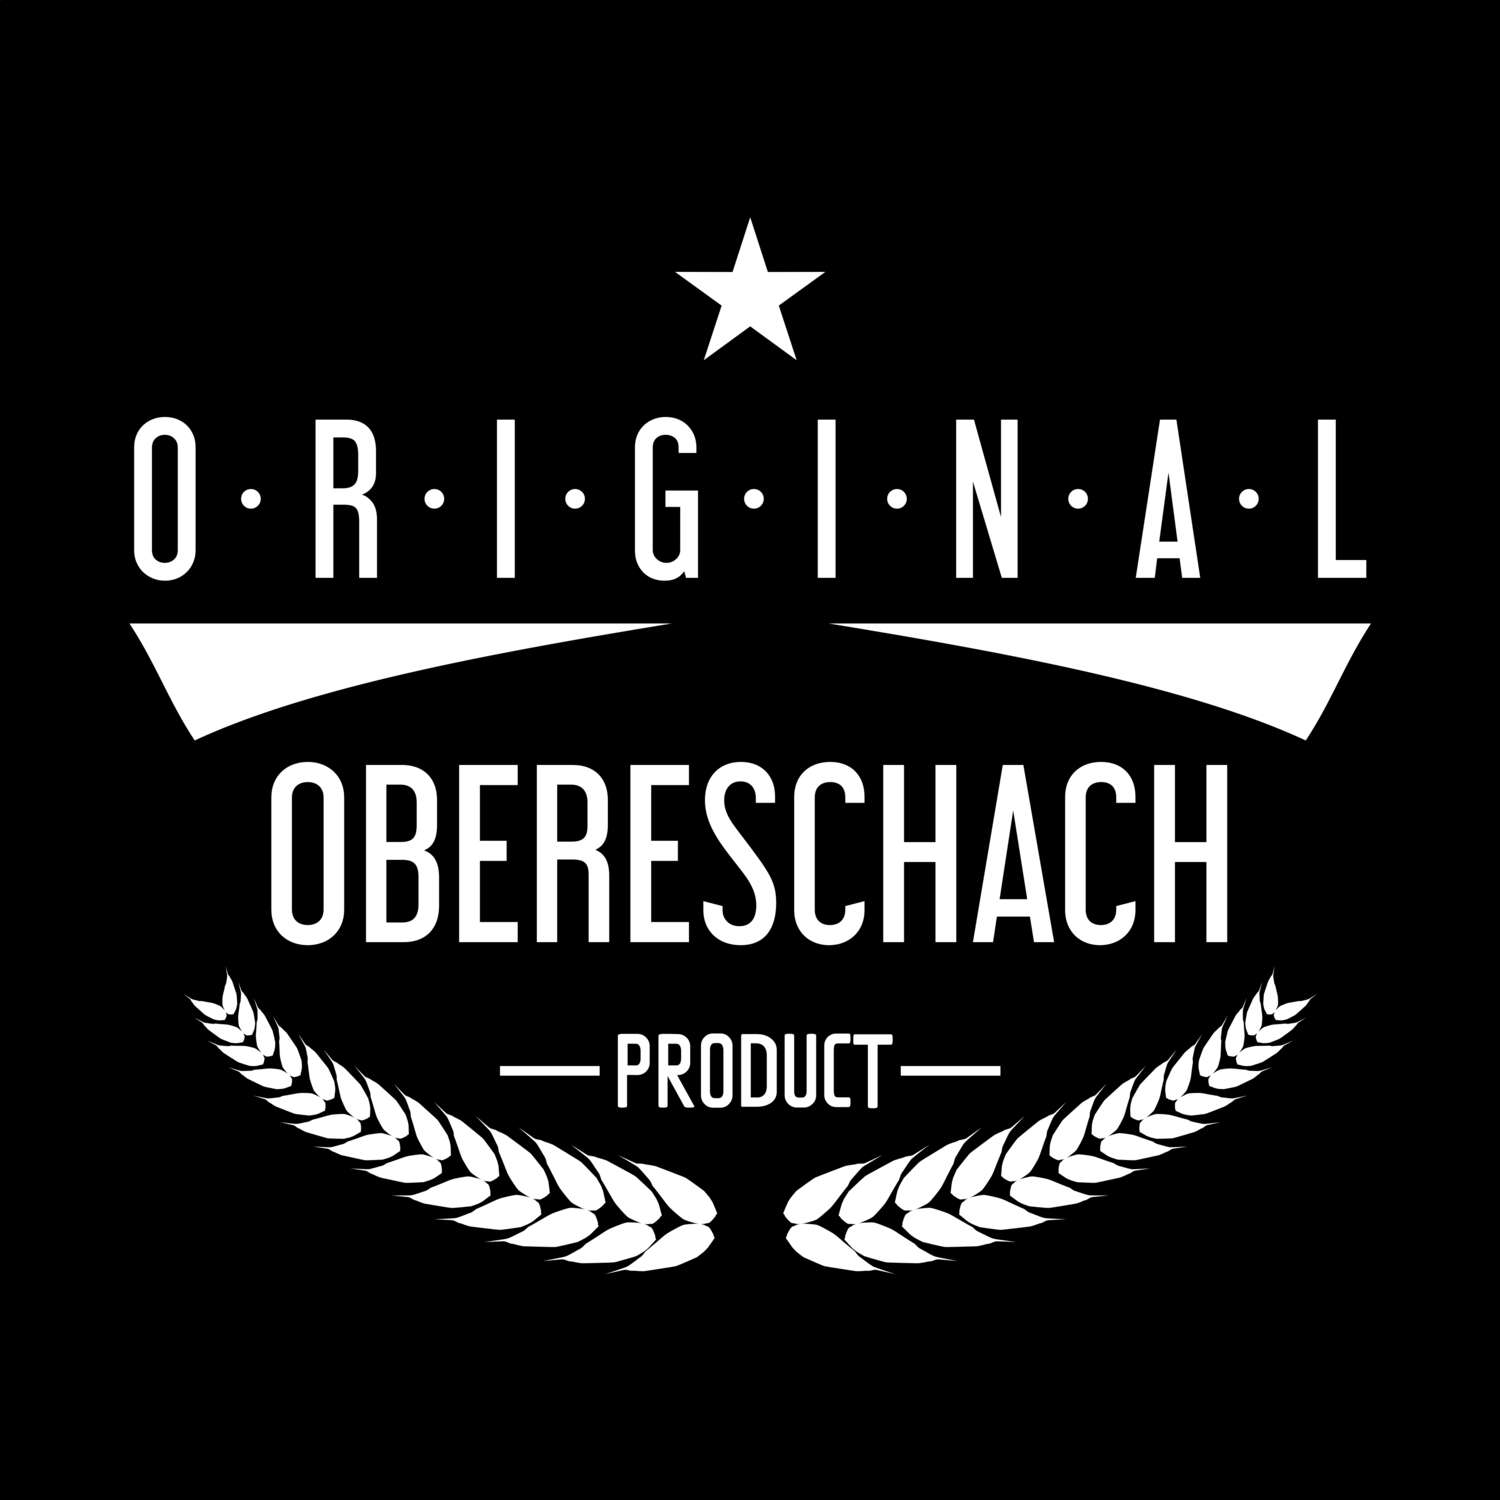 Obereschach T-Shirt »Original Product«